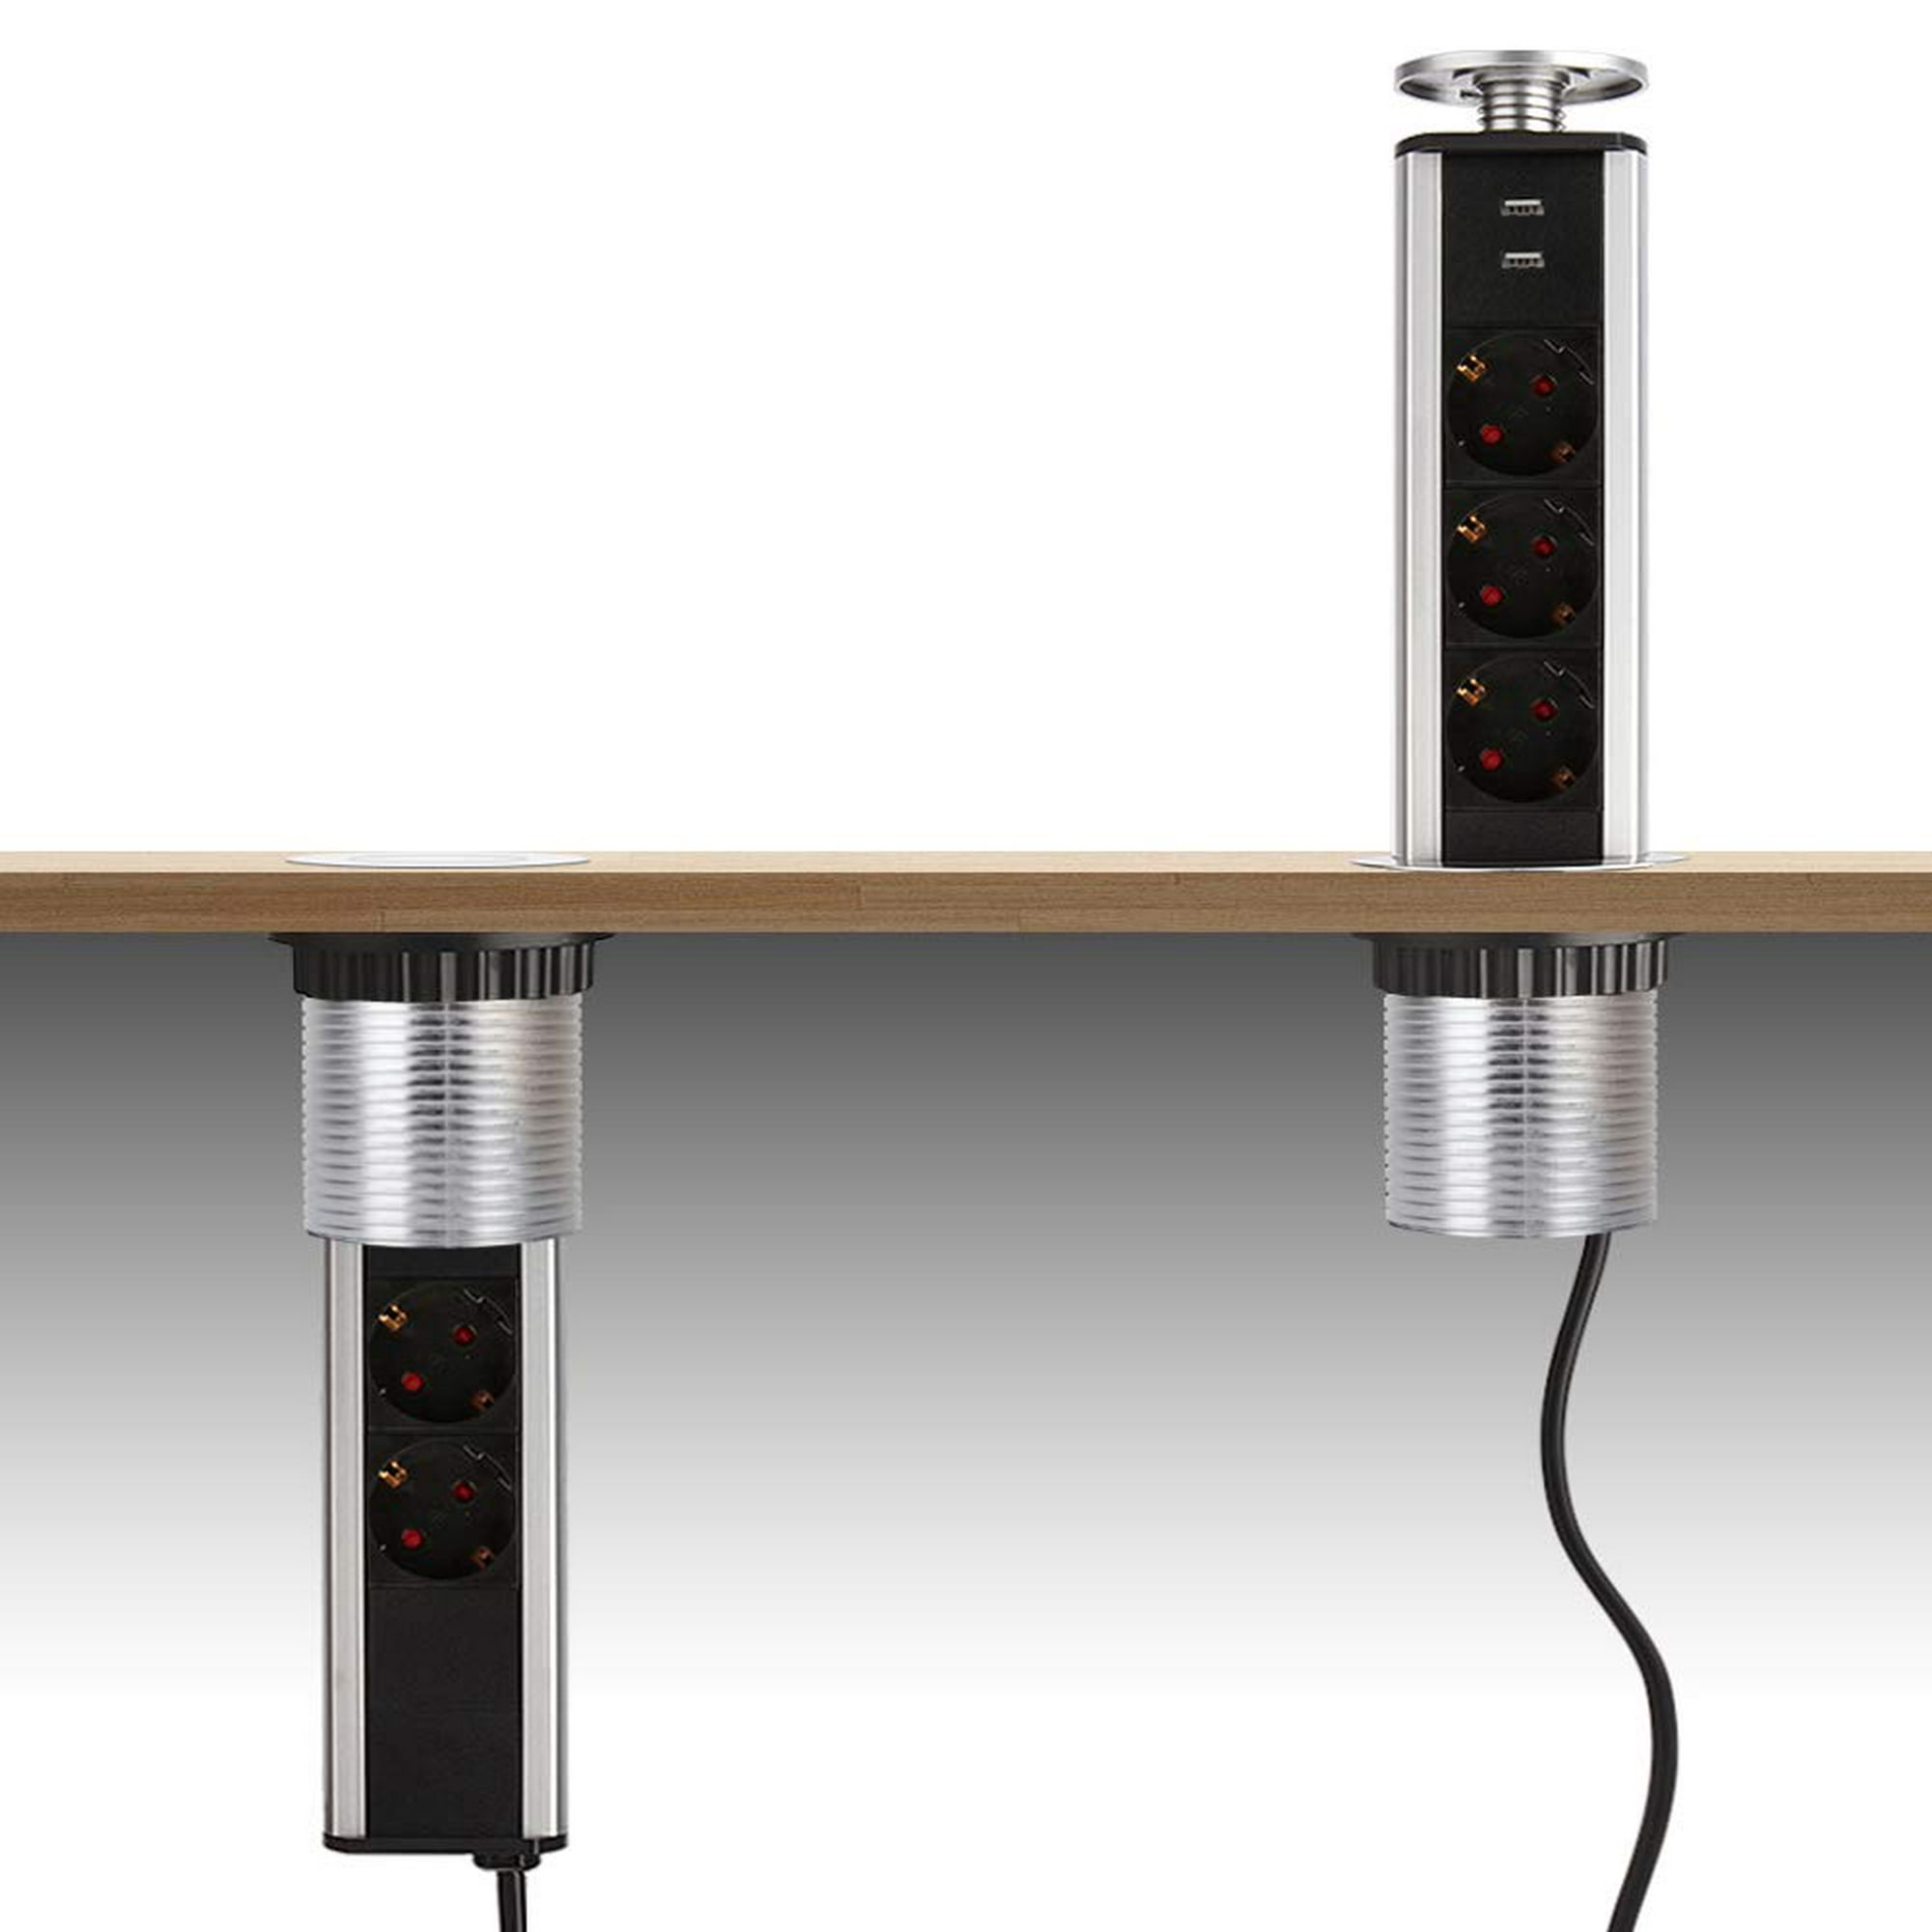 Enchufe empotrado Mesa Muebles Cocina Bajo encimera Regleta retráctil de 3  vías con USB - Alemania, Nuevo - Plataforma mayorista